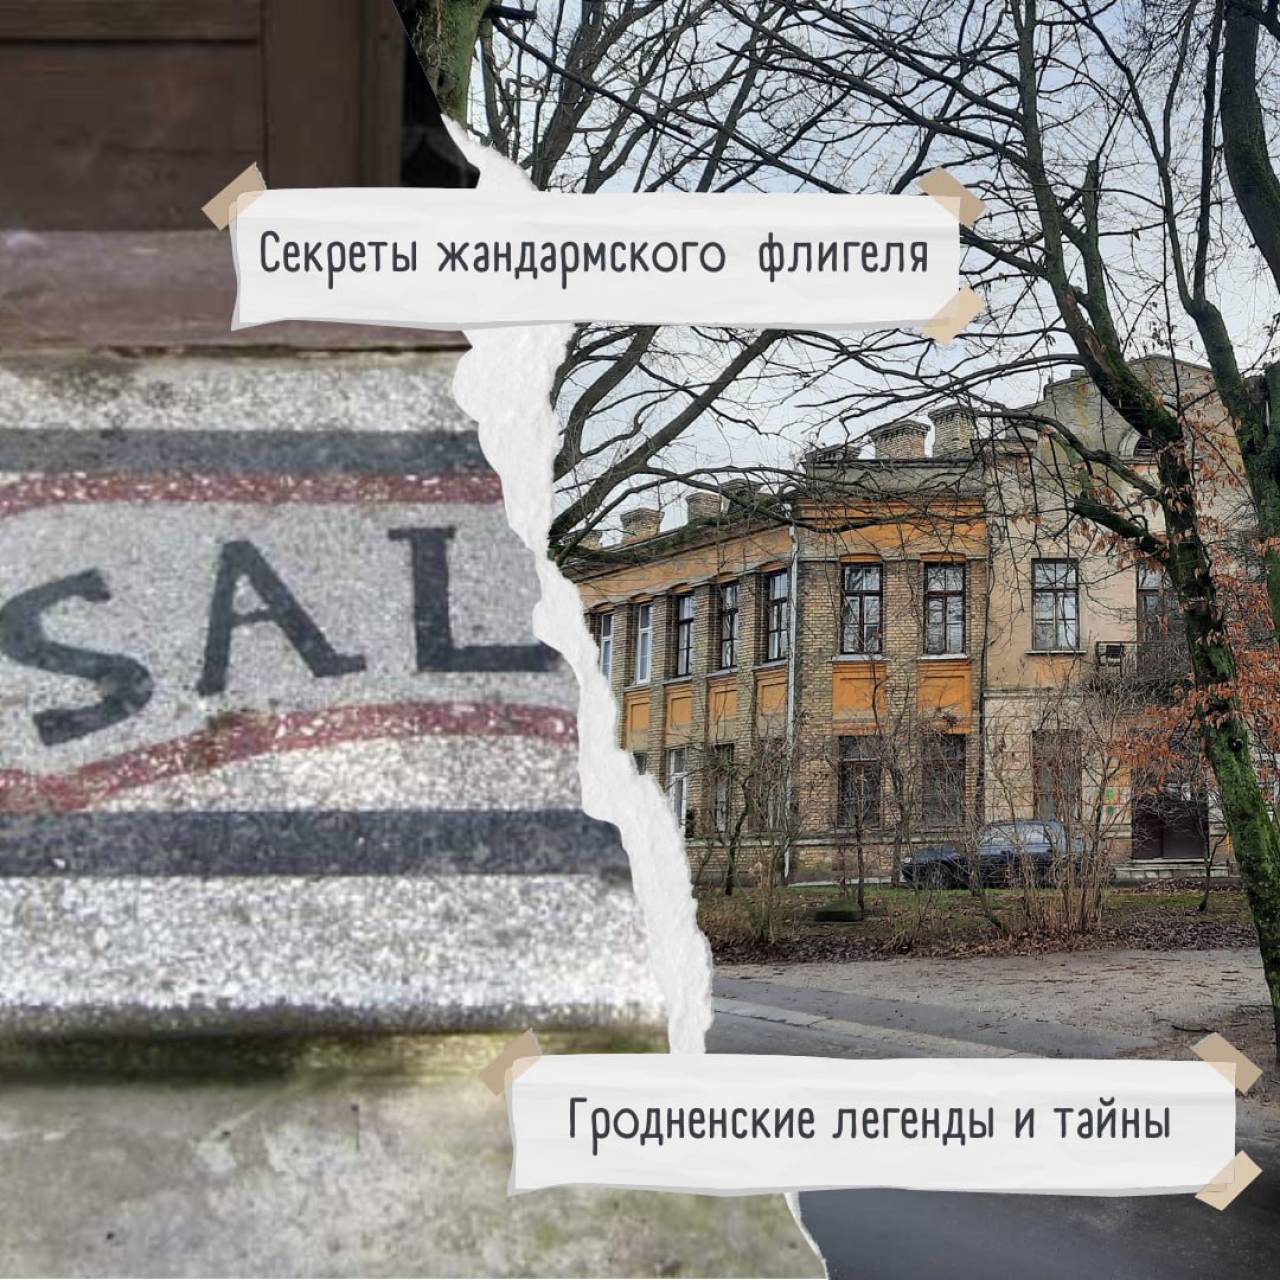 Секреты и загадки жандармского флигеля в Гродно рассказали сами его жильцы